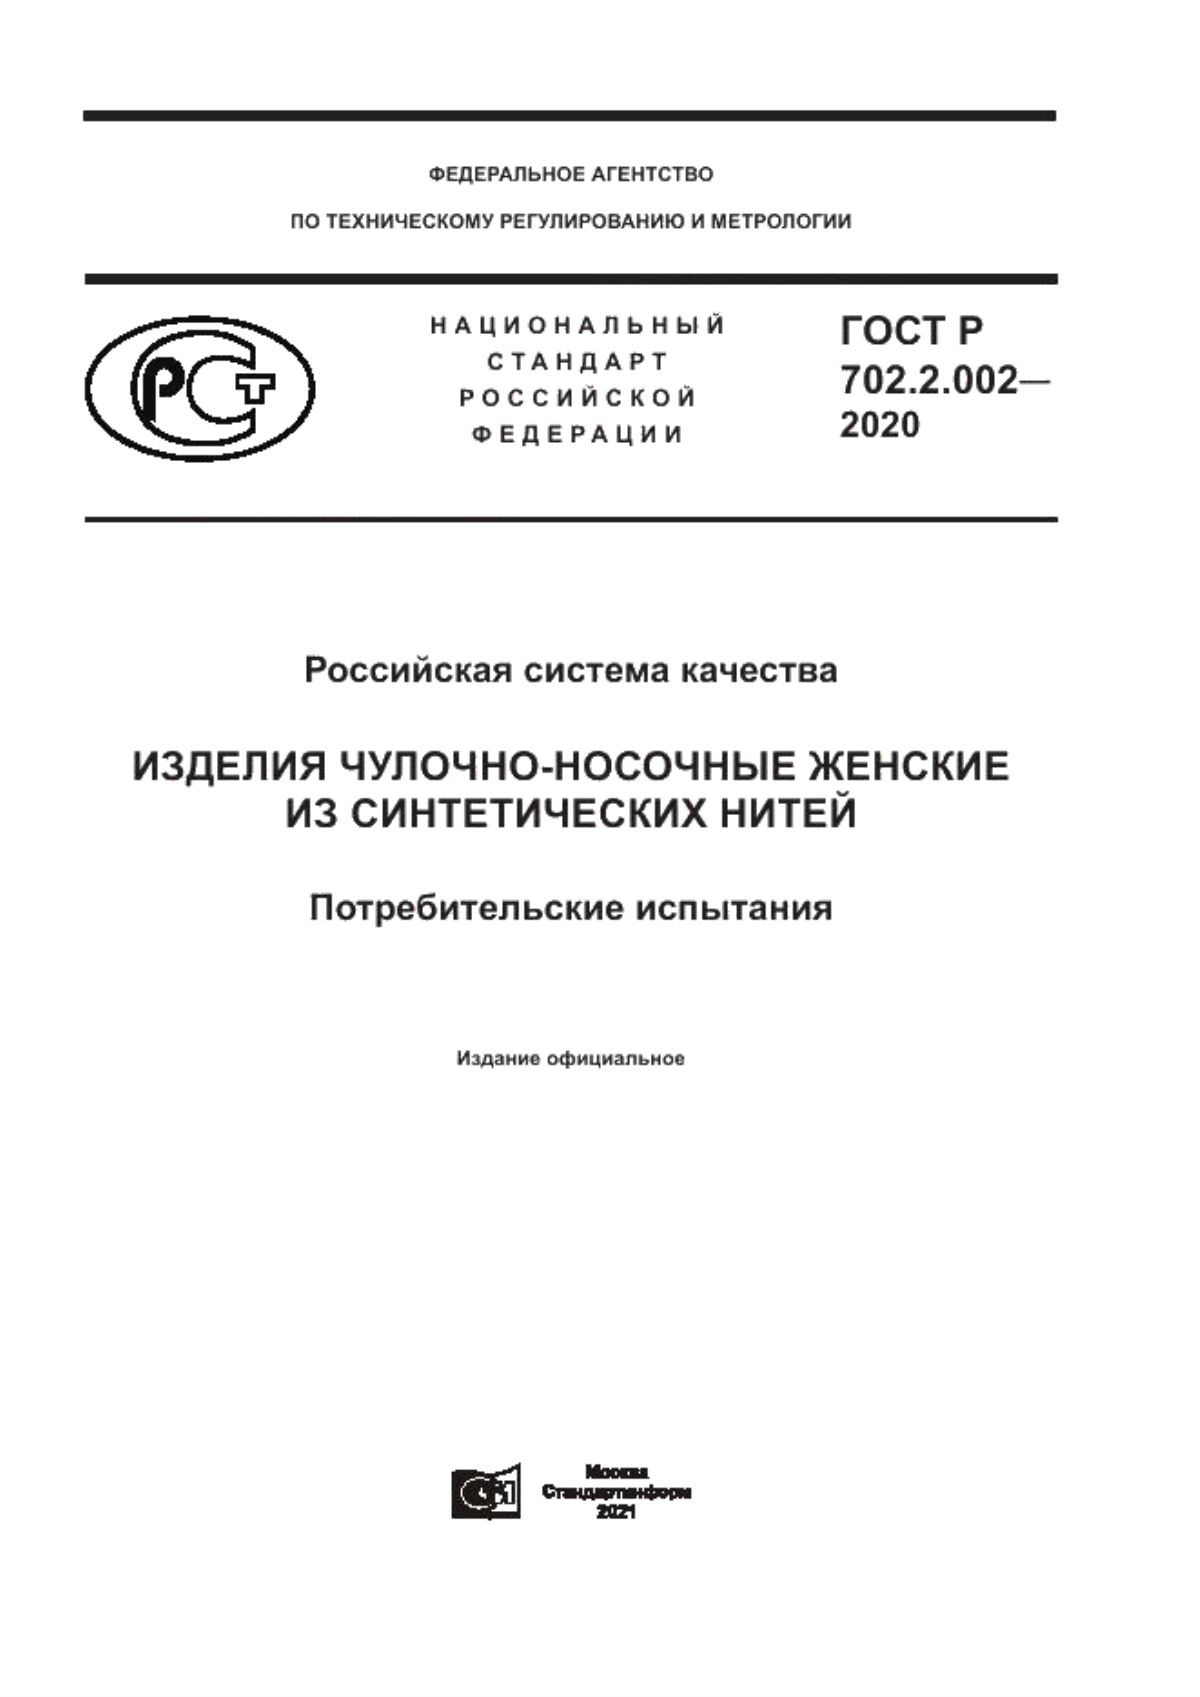 ГОСТ Р 702.2.002-2020 Российская система качества. Изделия чулочно-носочные женские из синтетических нитей. Потребительские испытания